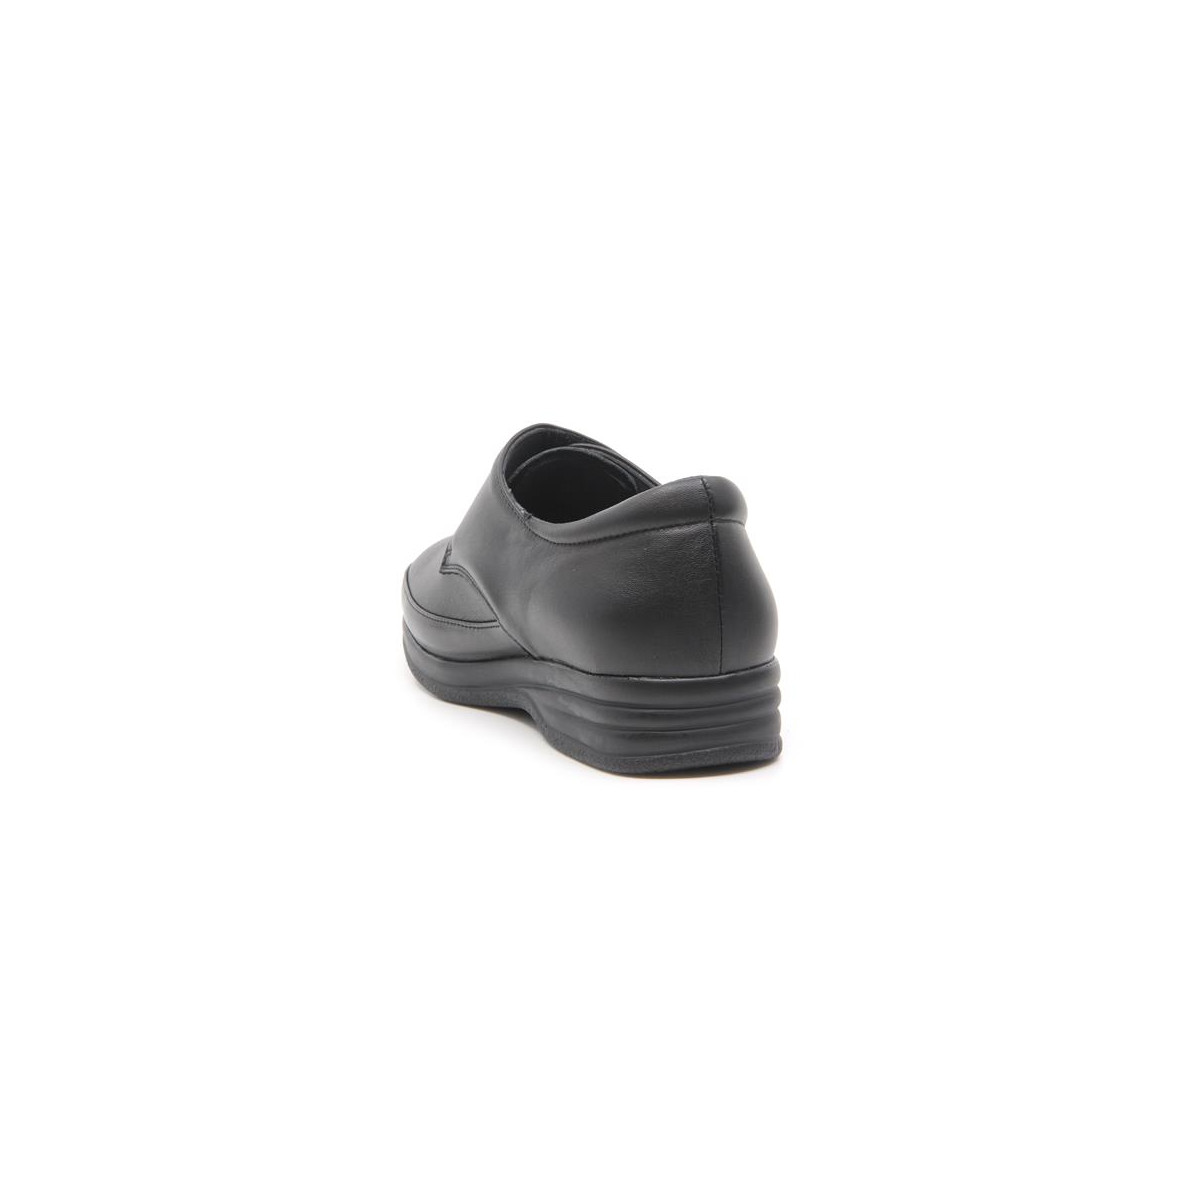 Chaussures confort pieds sensibles à velcro - Noir - Mabel Shoes